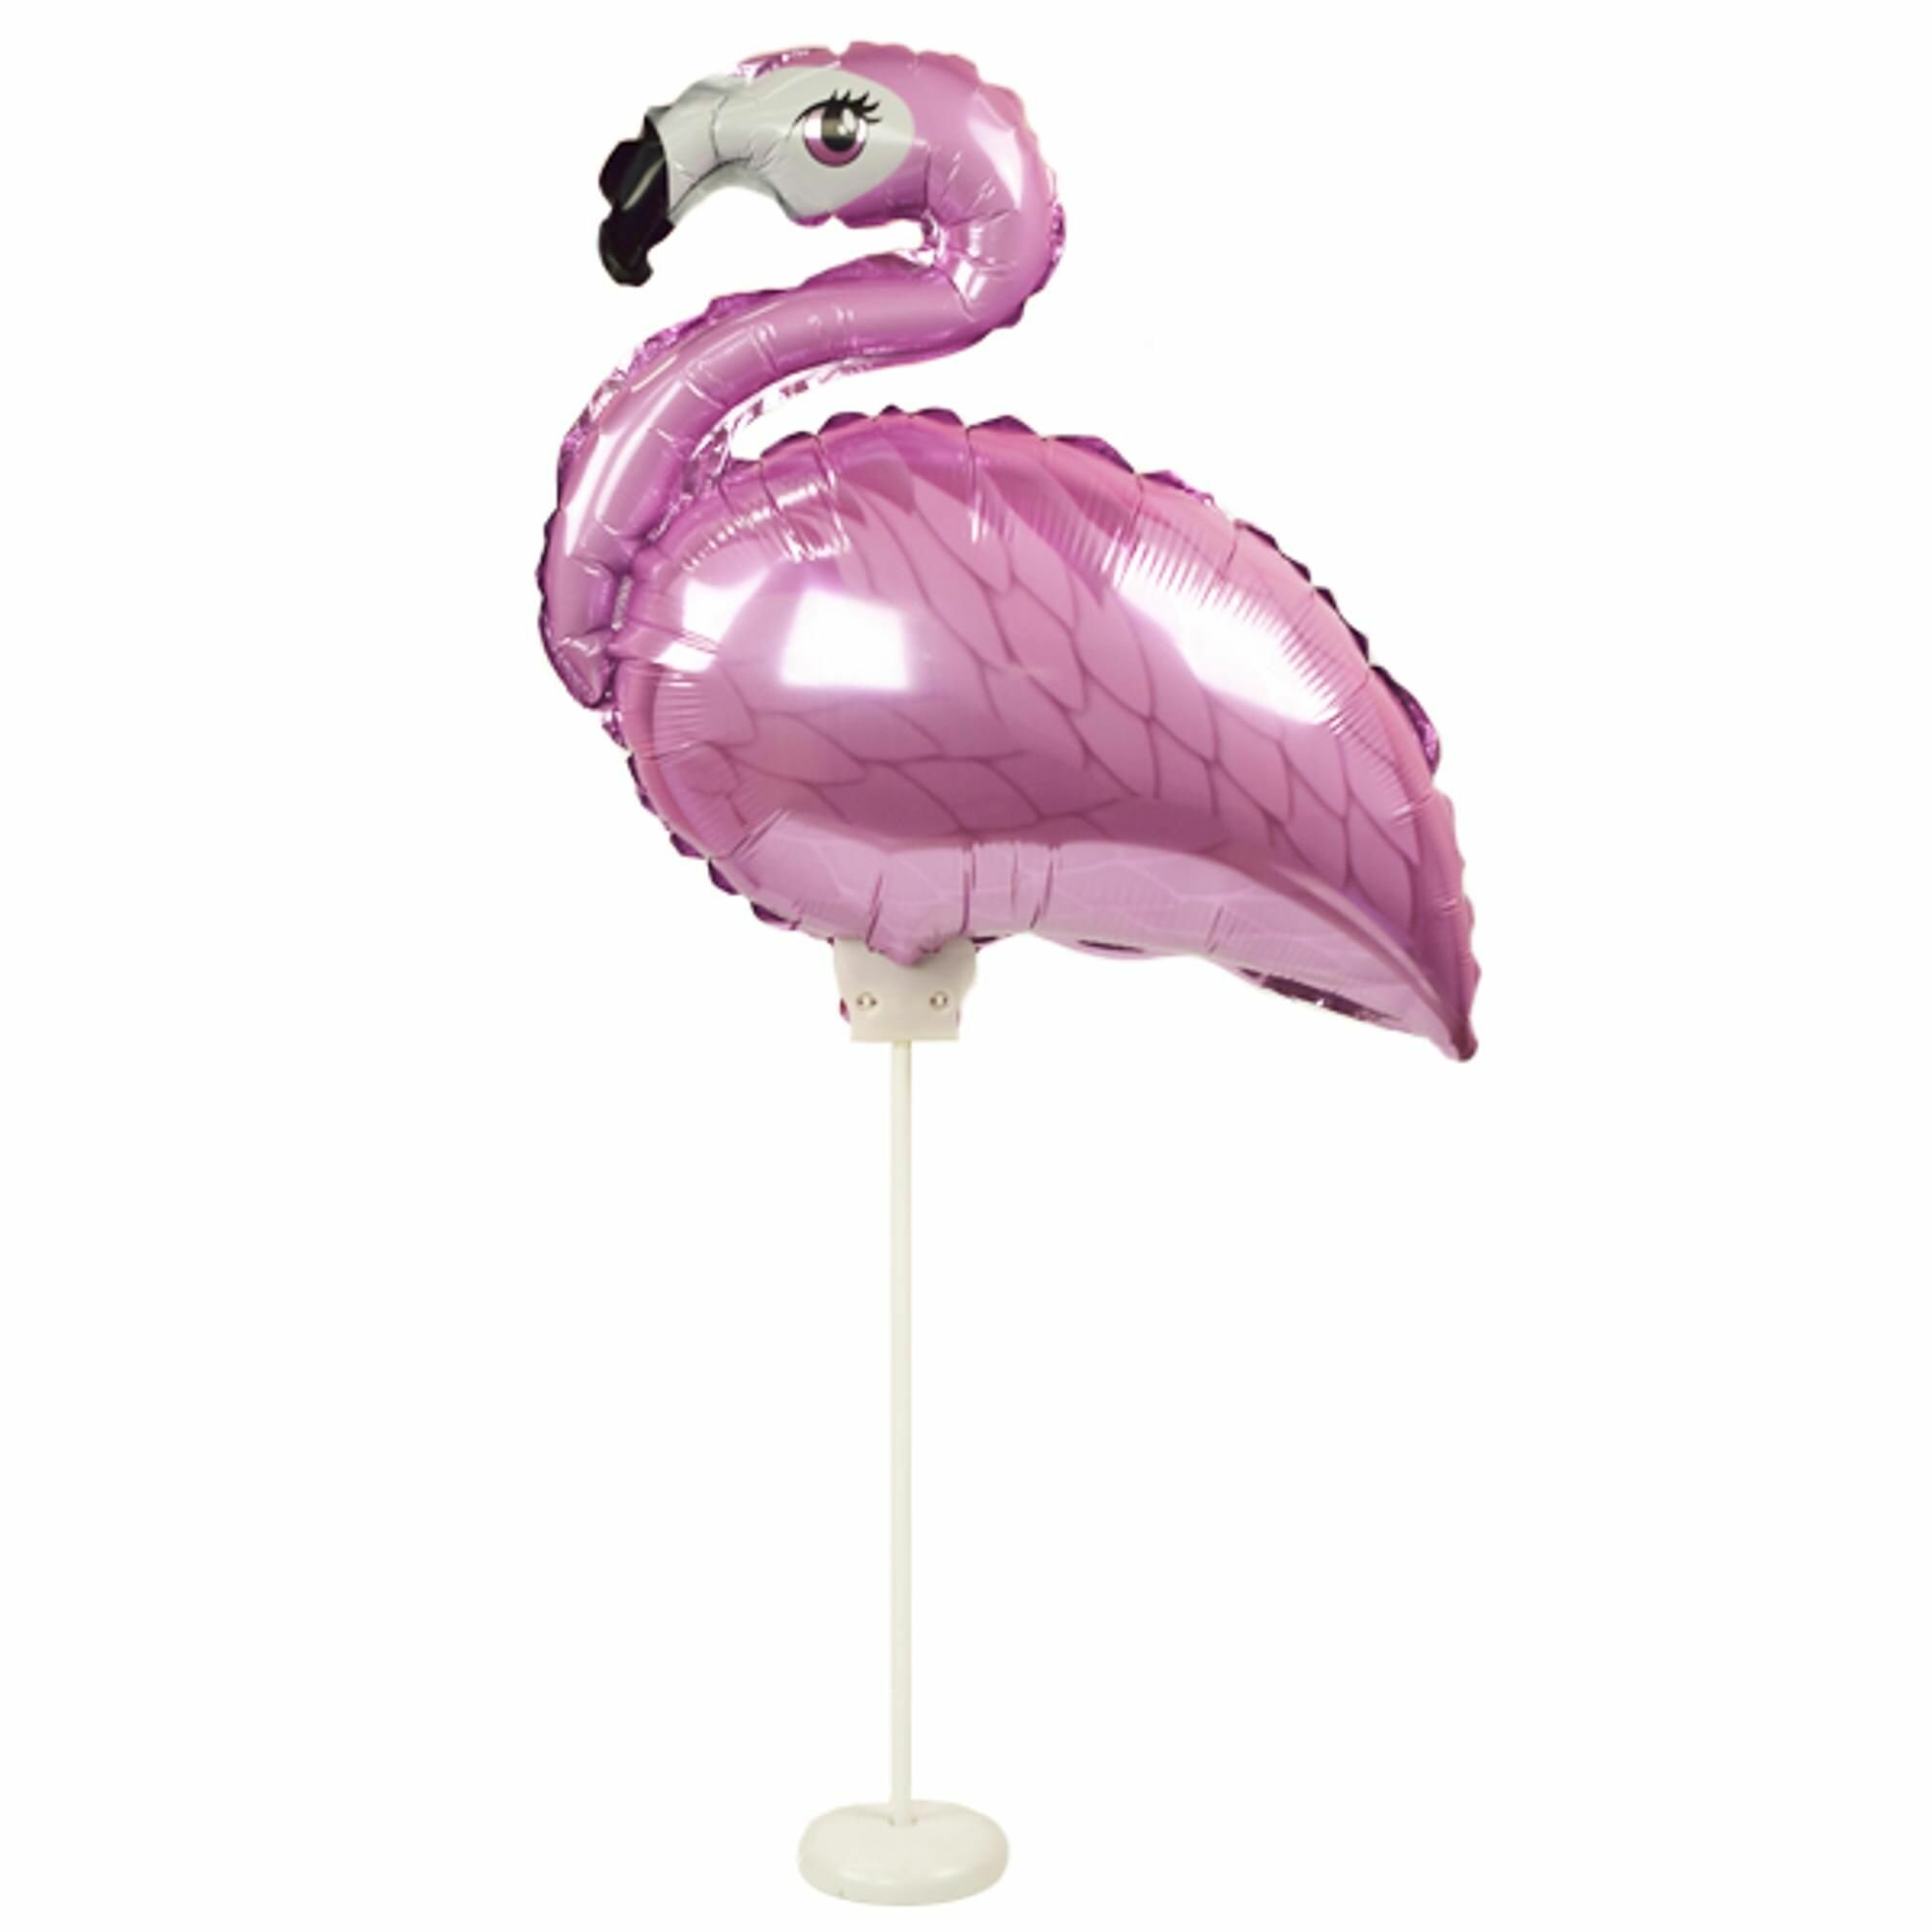 Фигура Фламинго PINK на подставке 35см х 43см